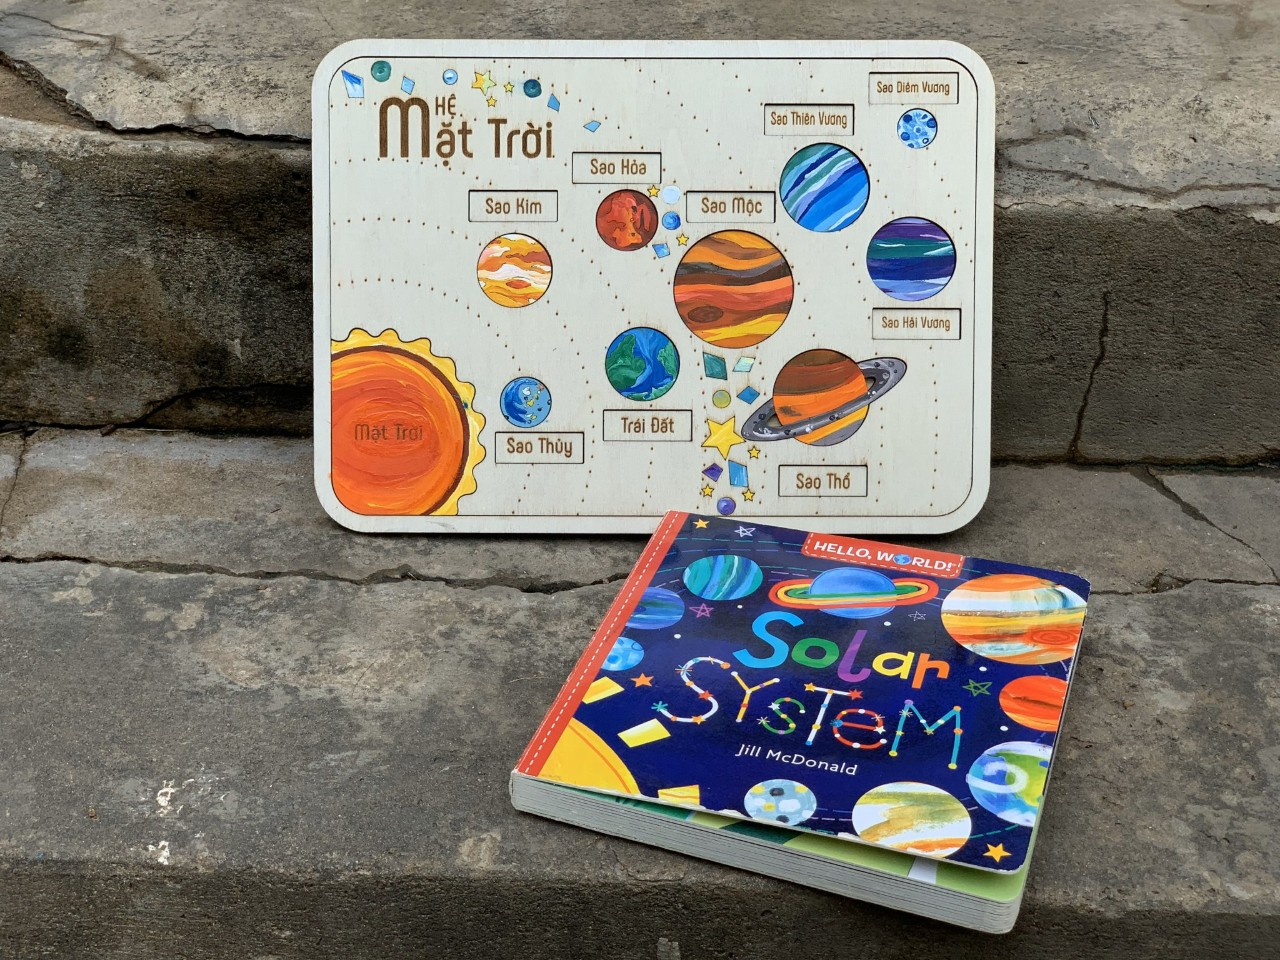 Solar System Bilingual Wooden Puzzle | GHÉP HÌNH HỆ MẶT TRỜI SONG NGỮ